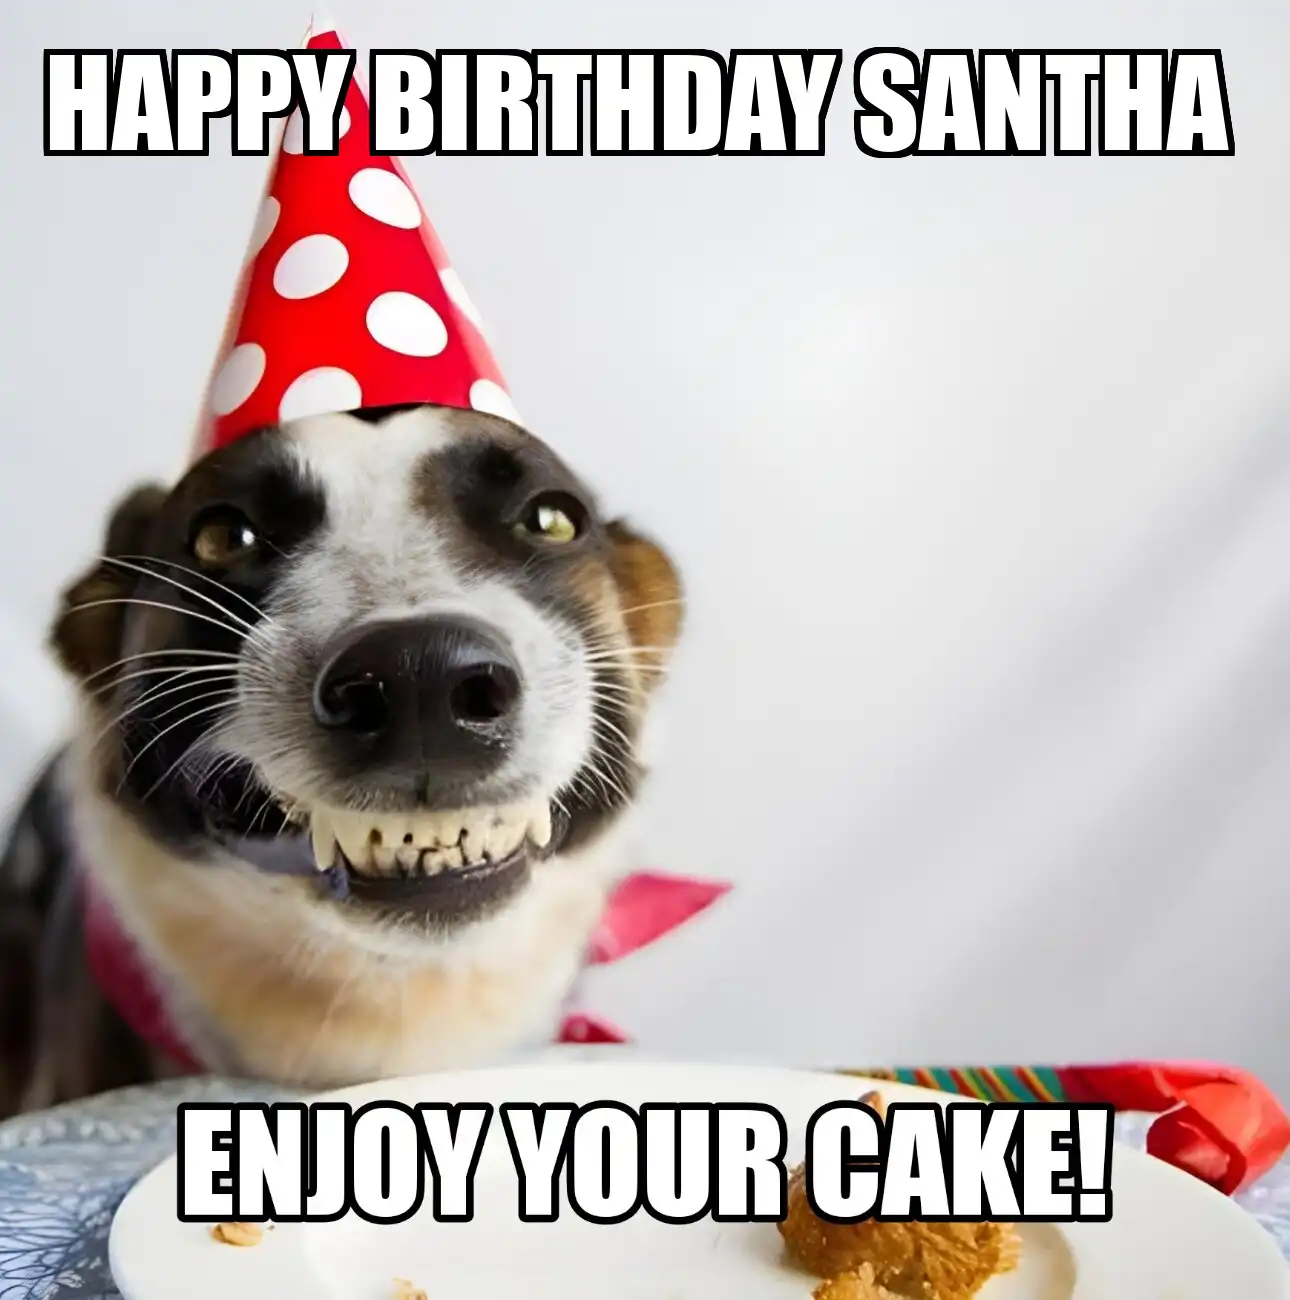 Happy Birthday Santha Enjoy Your Cake Dog Meme